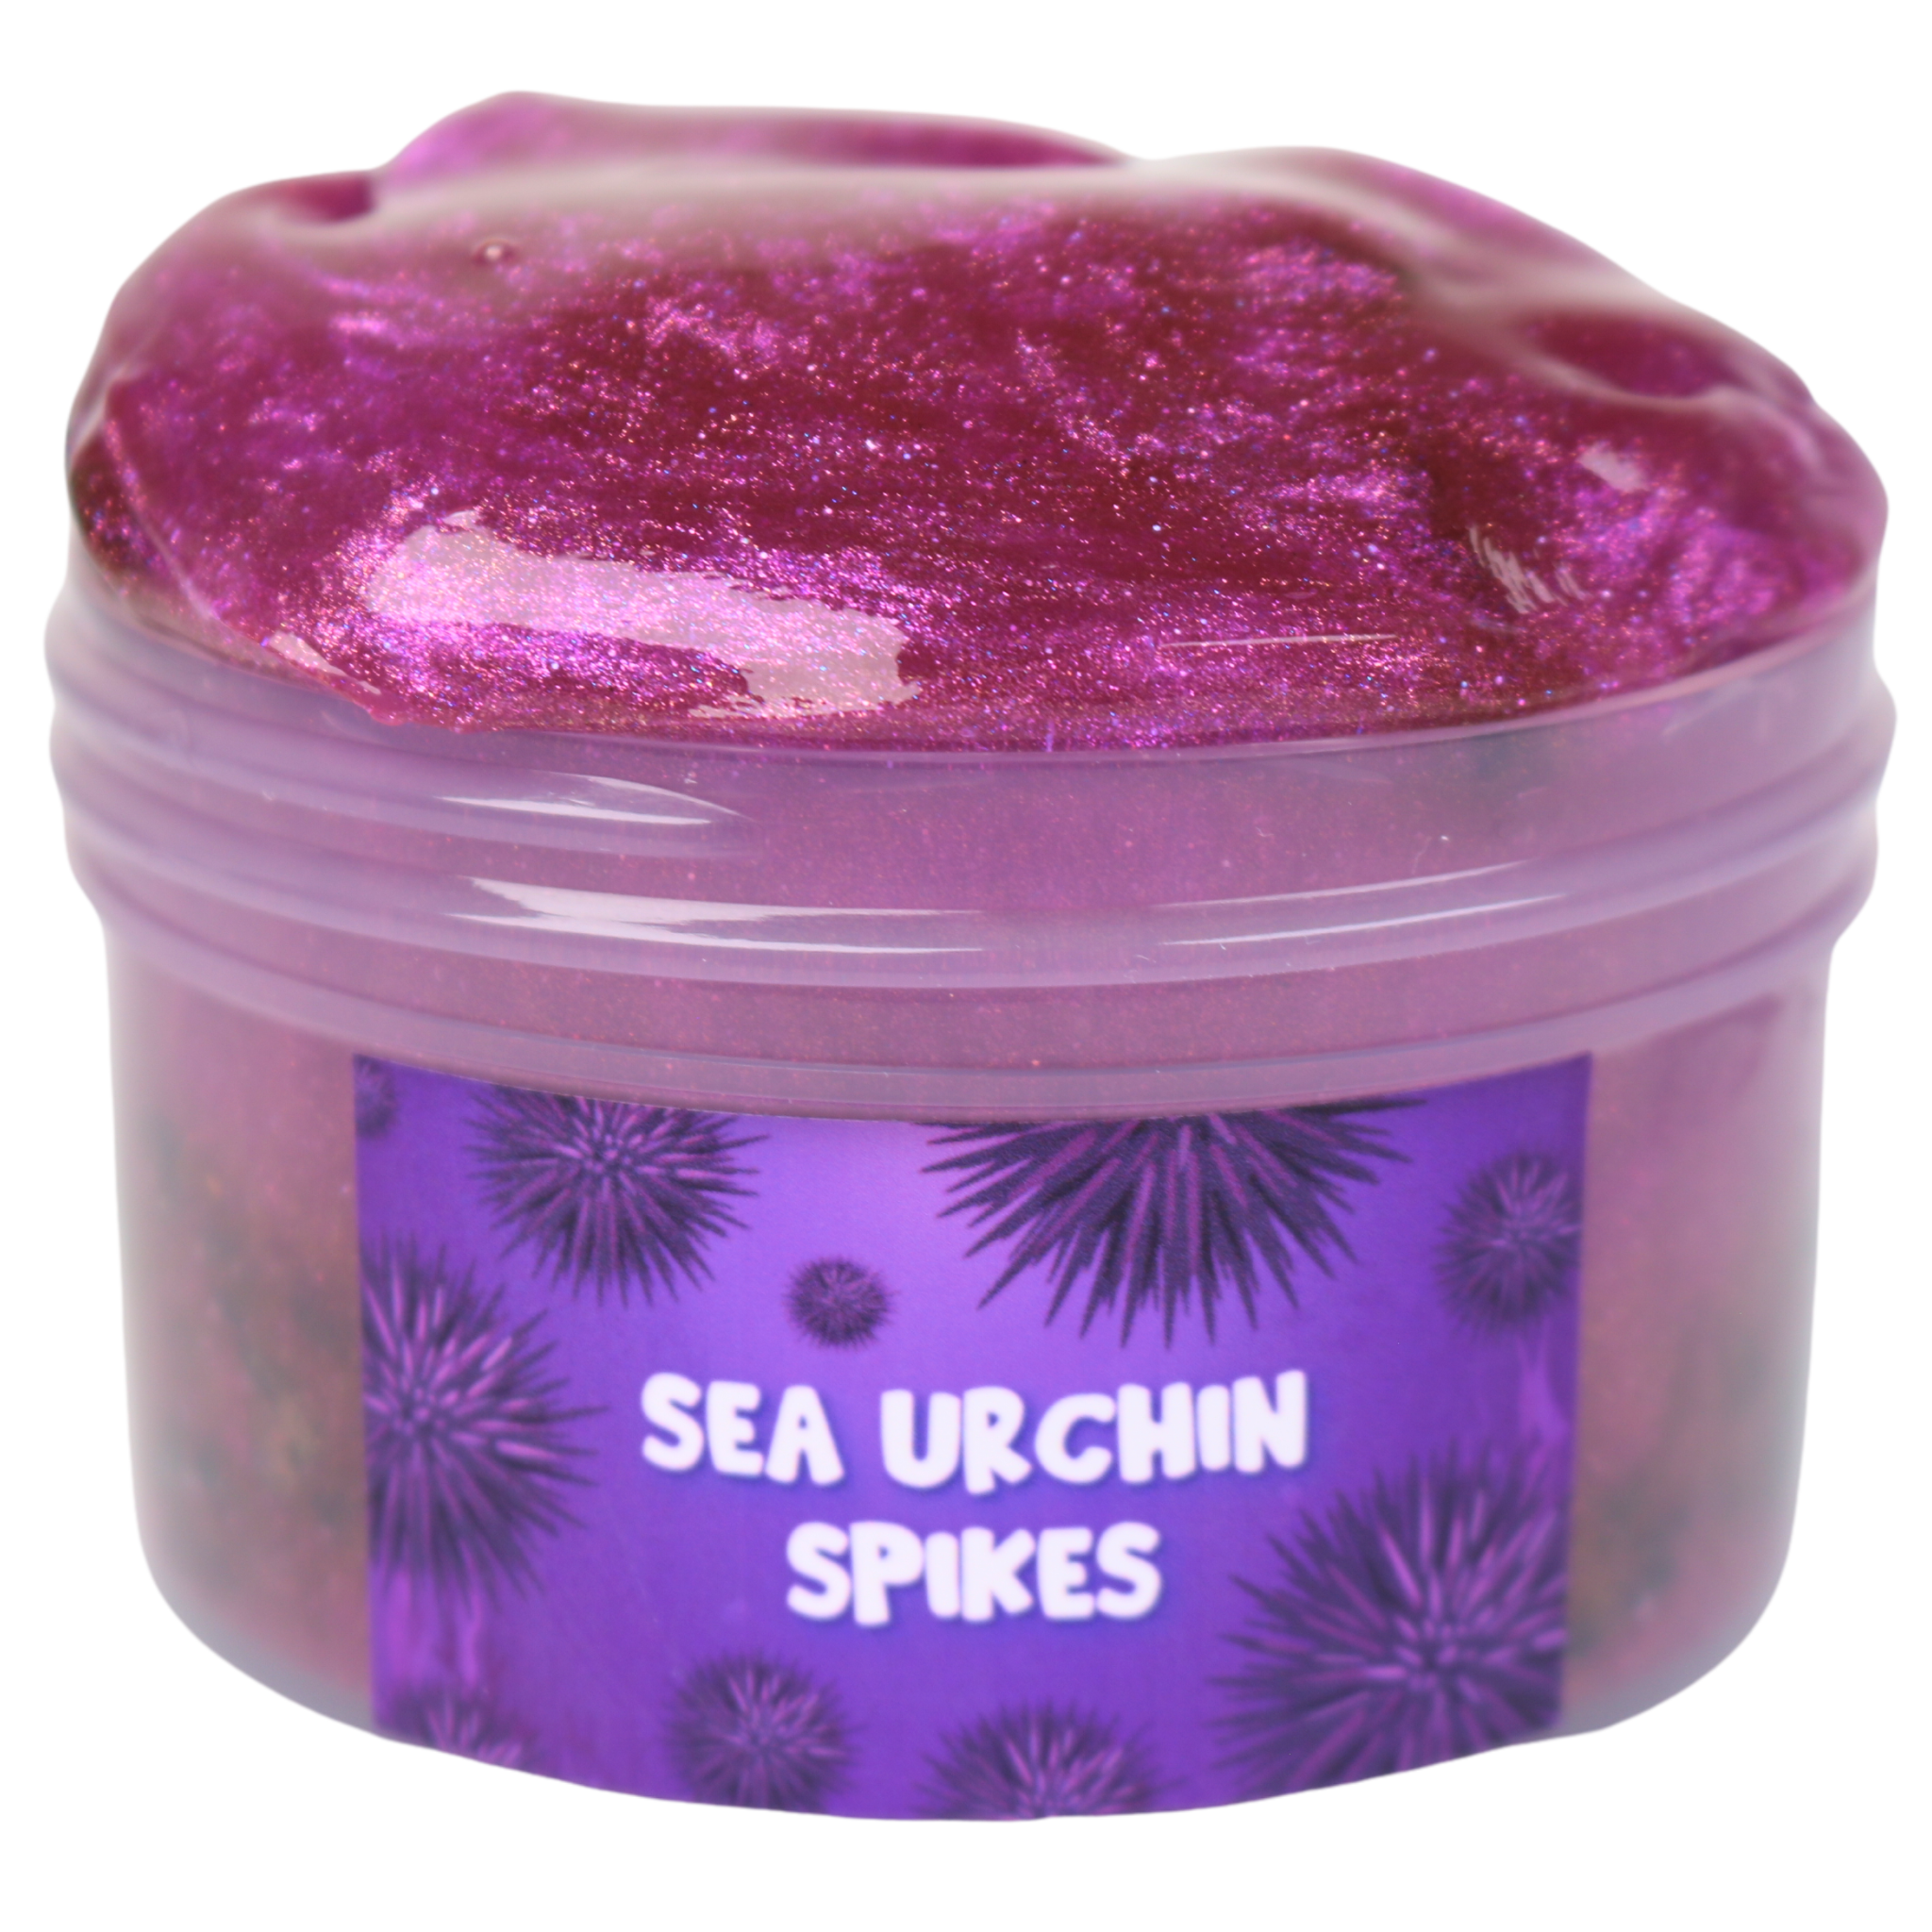 Sea Urchin Spikes